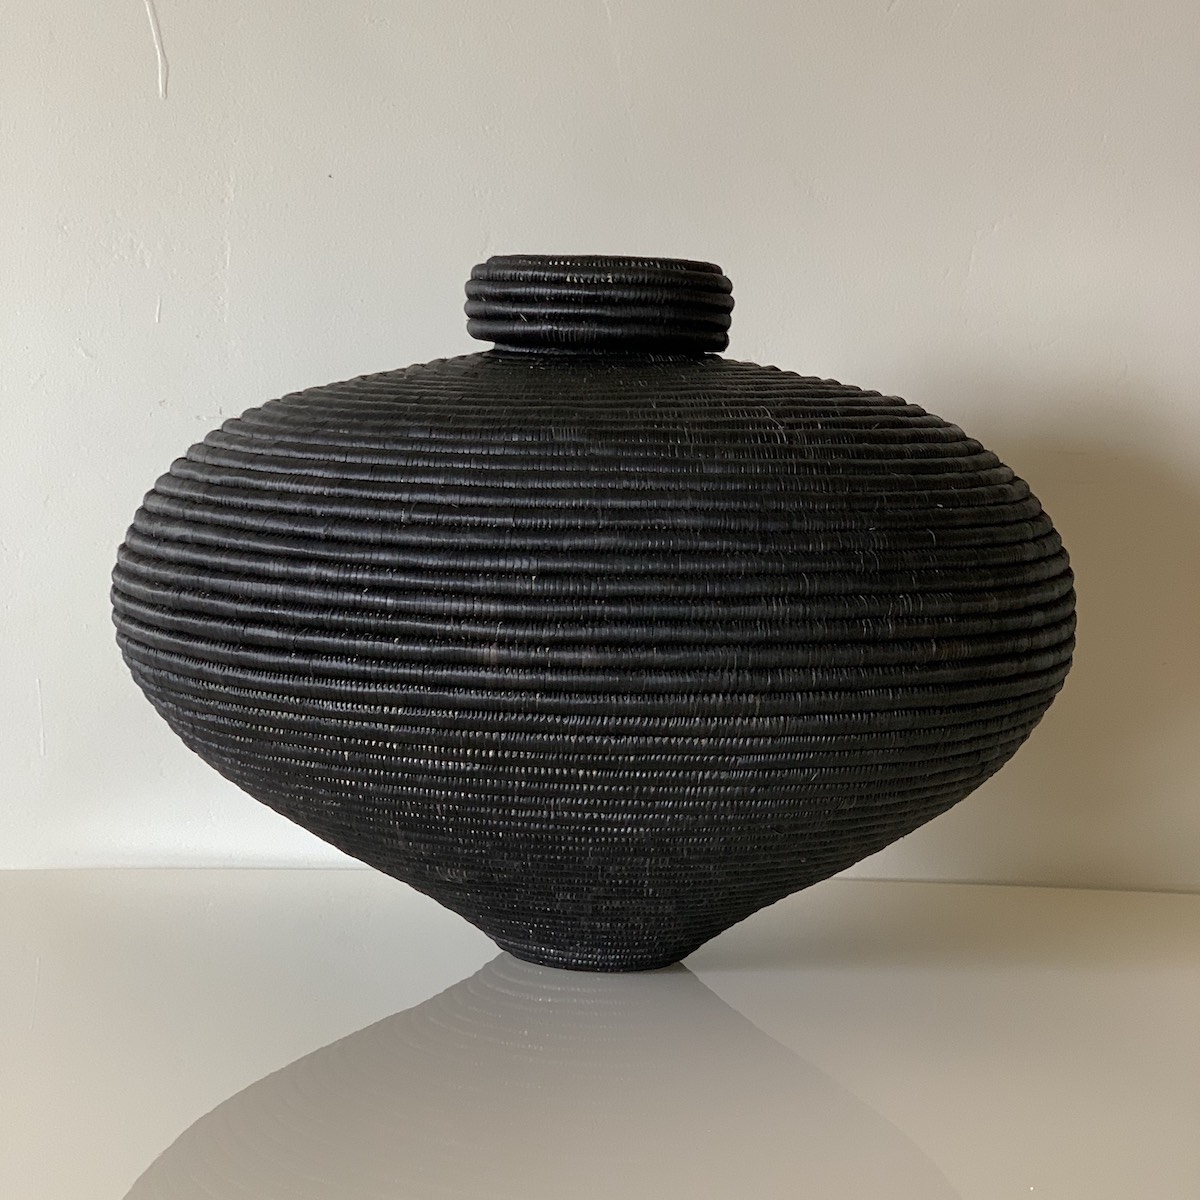 Black Beauty Ngxongo basket